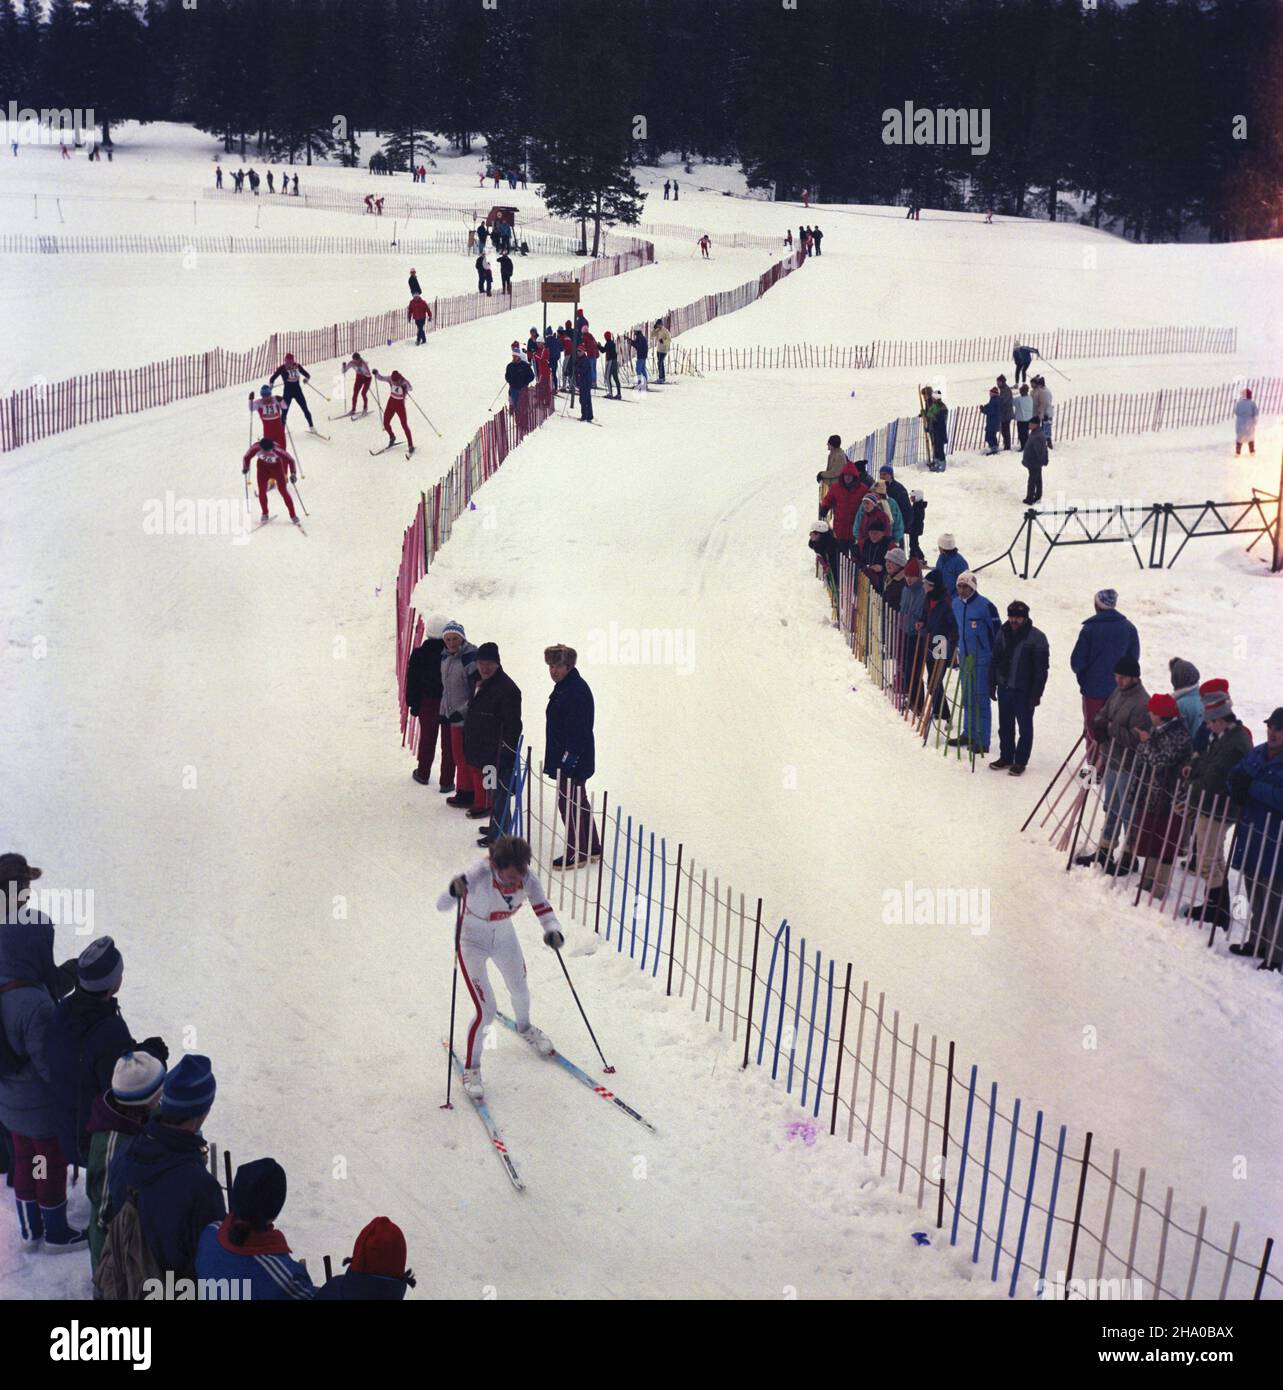 Zakopane 31.12.1986. Sylwestrowy Bieg Narciarski. ka  PAP/Stanis³aw Momot         Zakopane, 31 December 1986. New Year's Eve Skiing Race.  ka  PAP/Stanislaw Momot Stock Photo